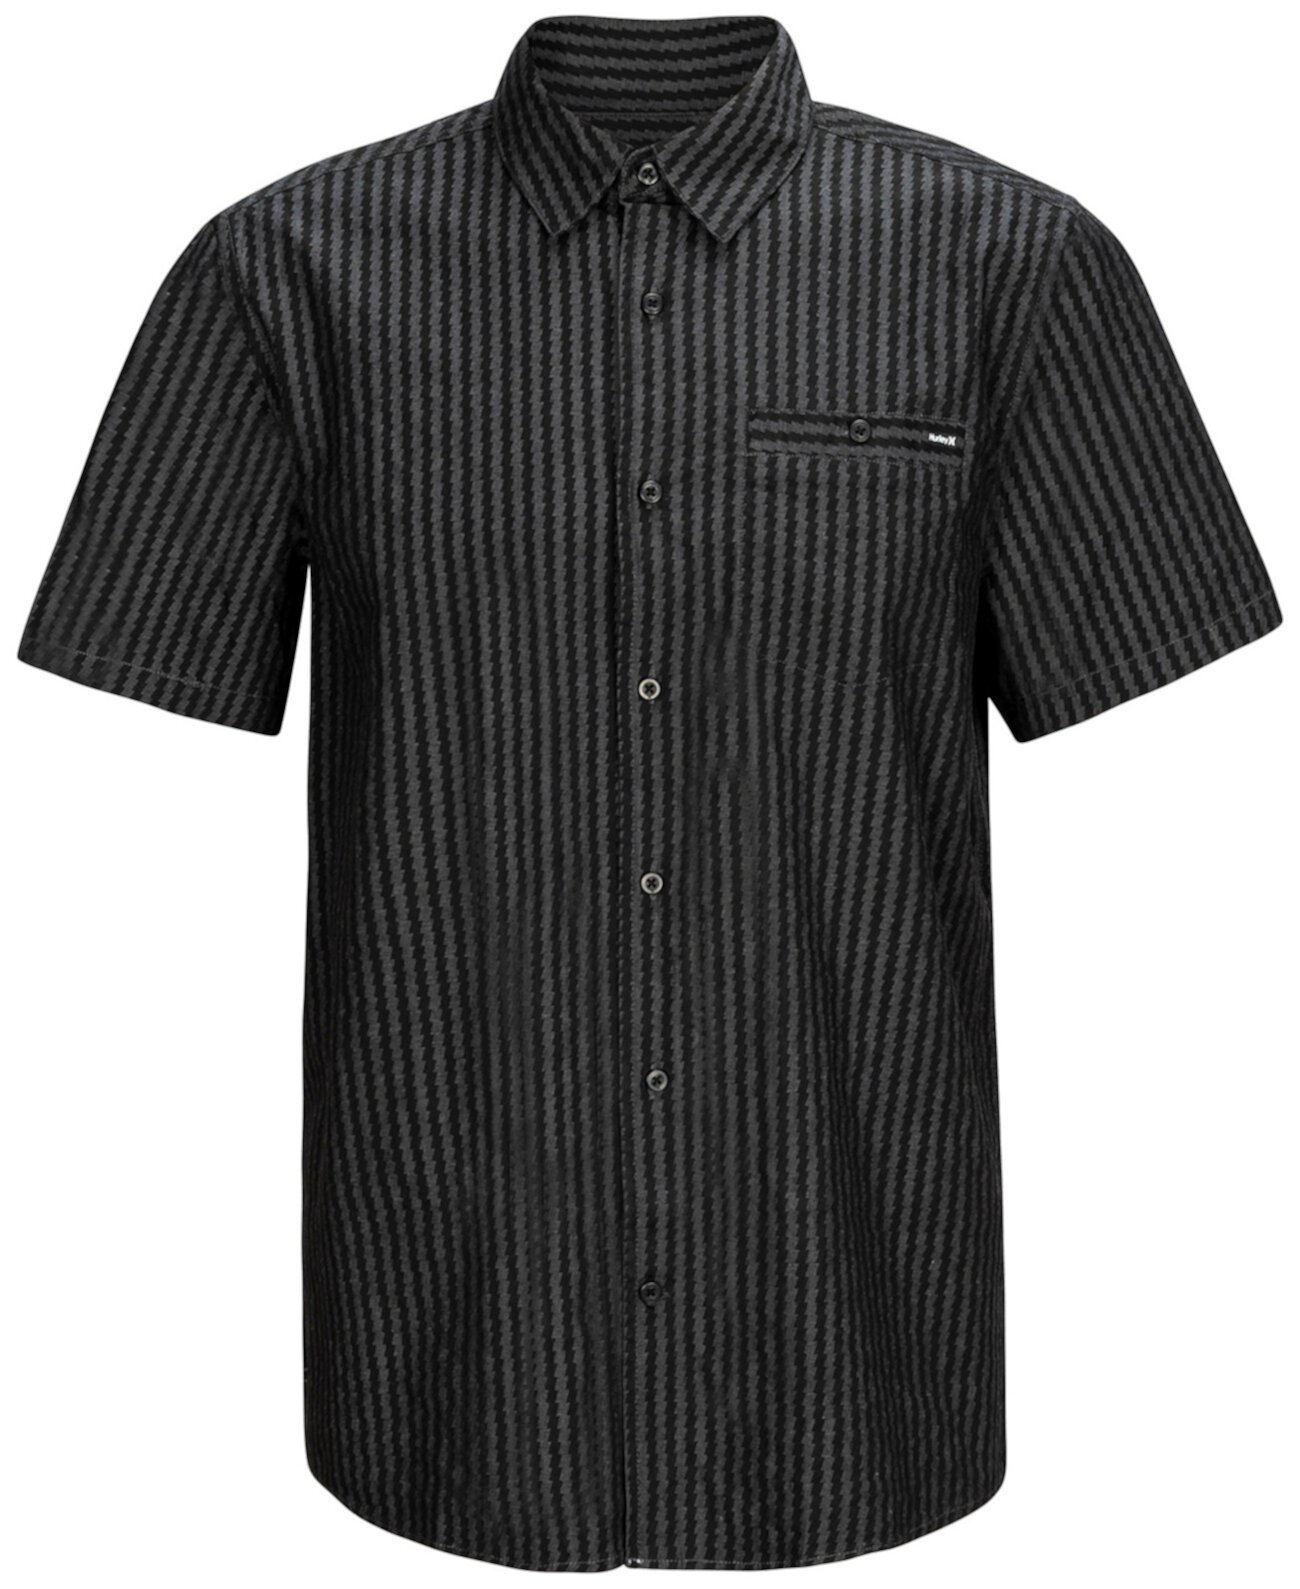 Мужская рубашка классического кроя из шамбре в полоску зигзаг в 4 направлениях стрейч Hurley